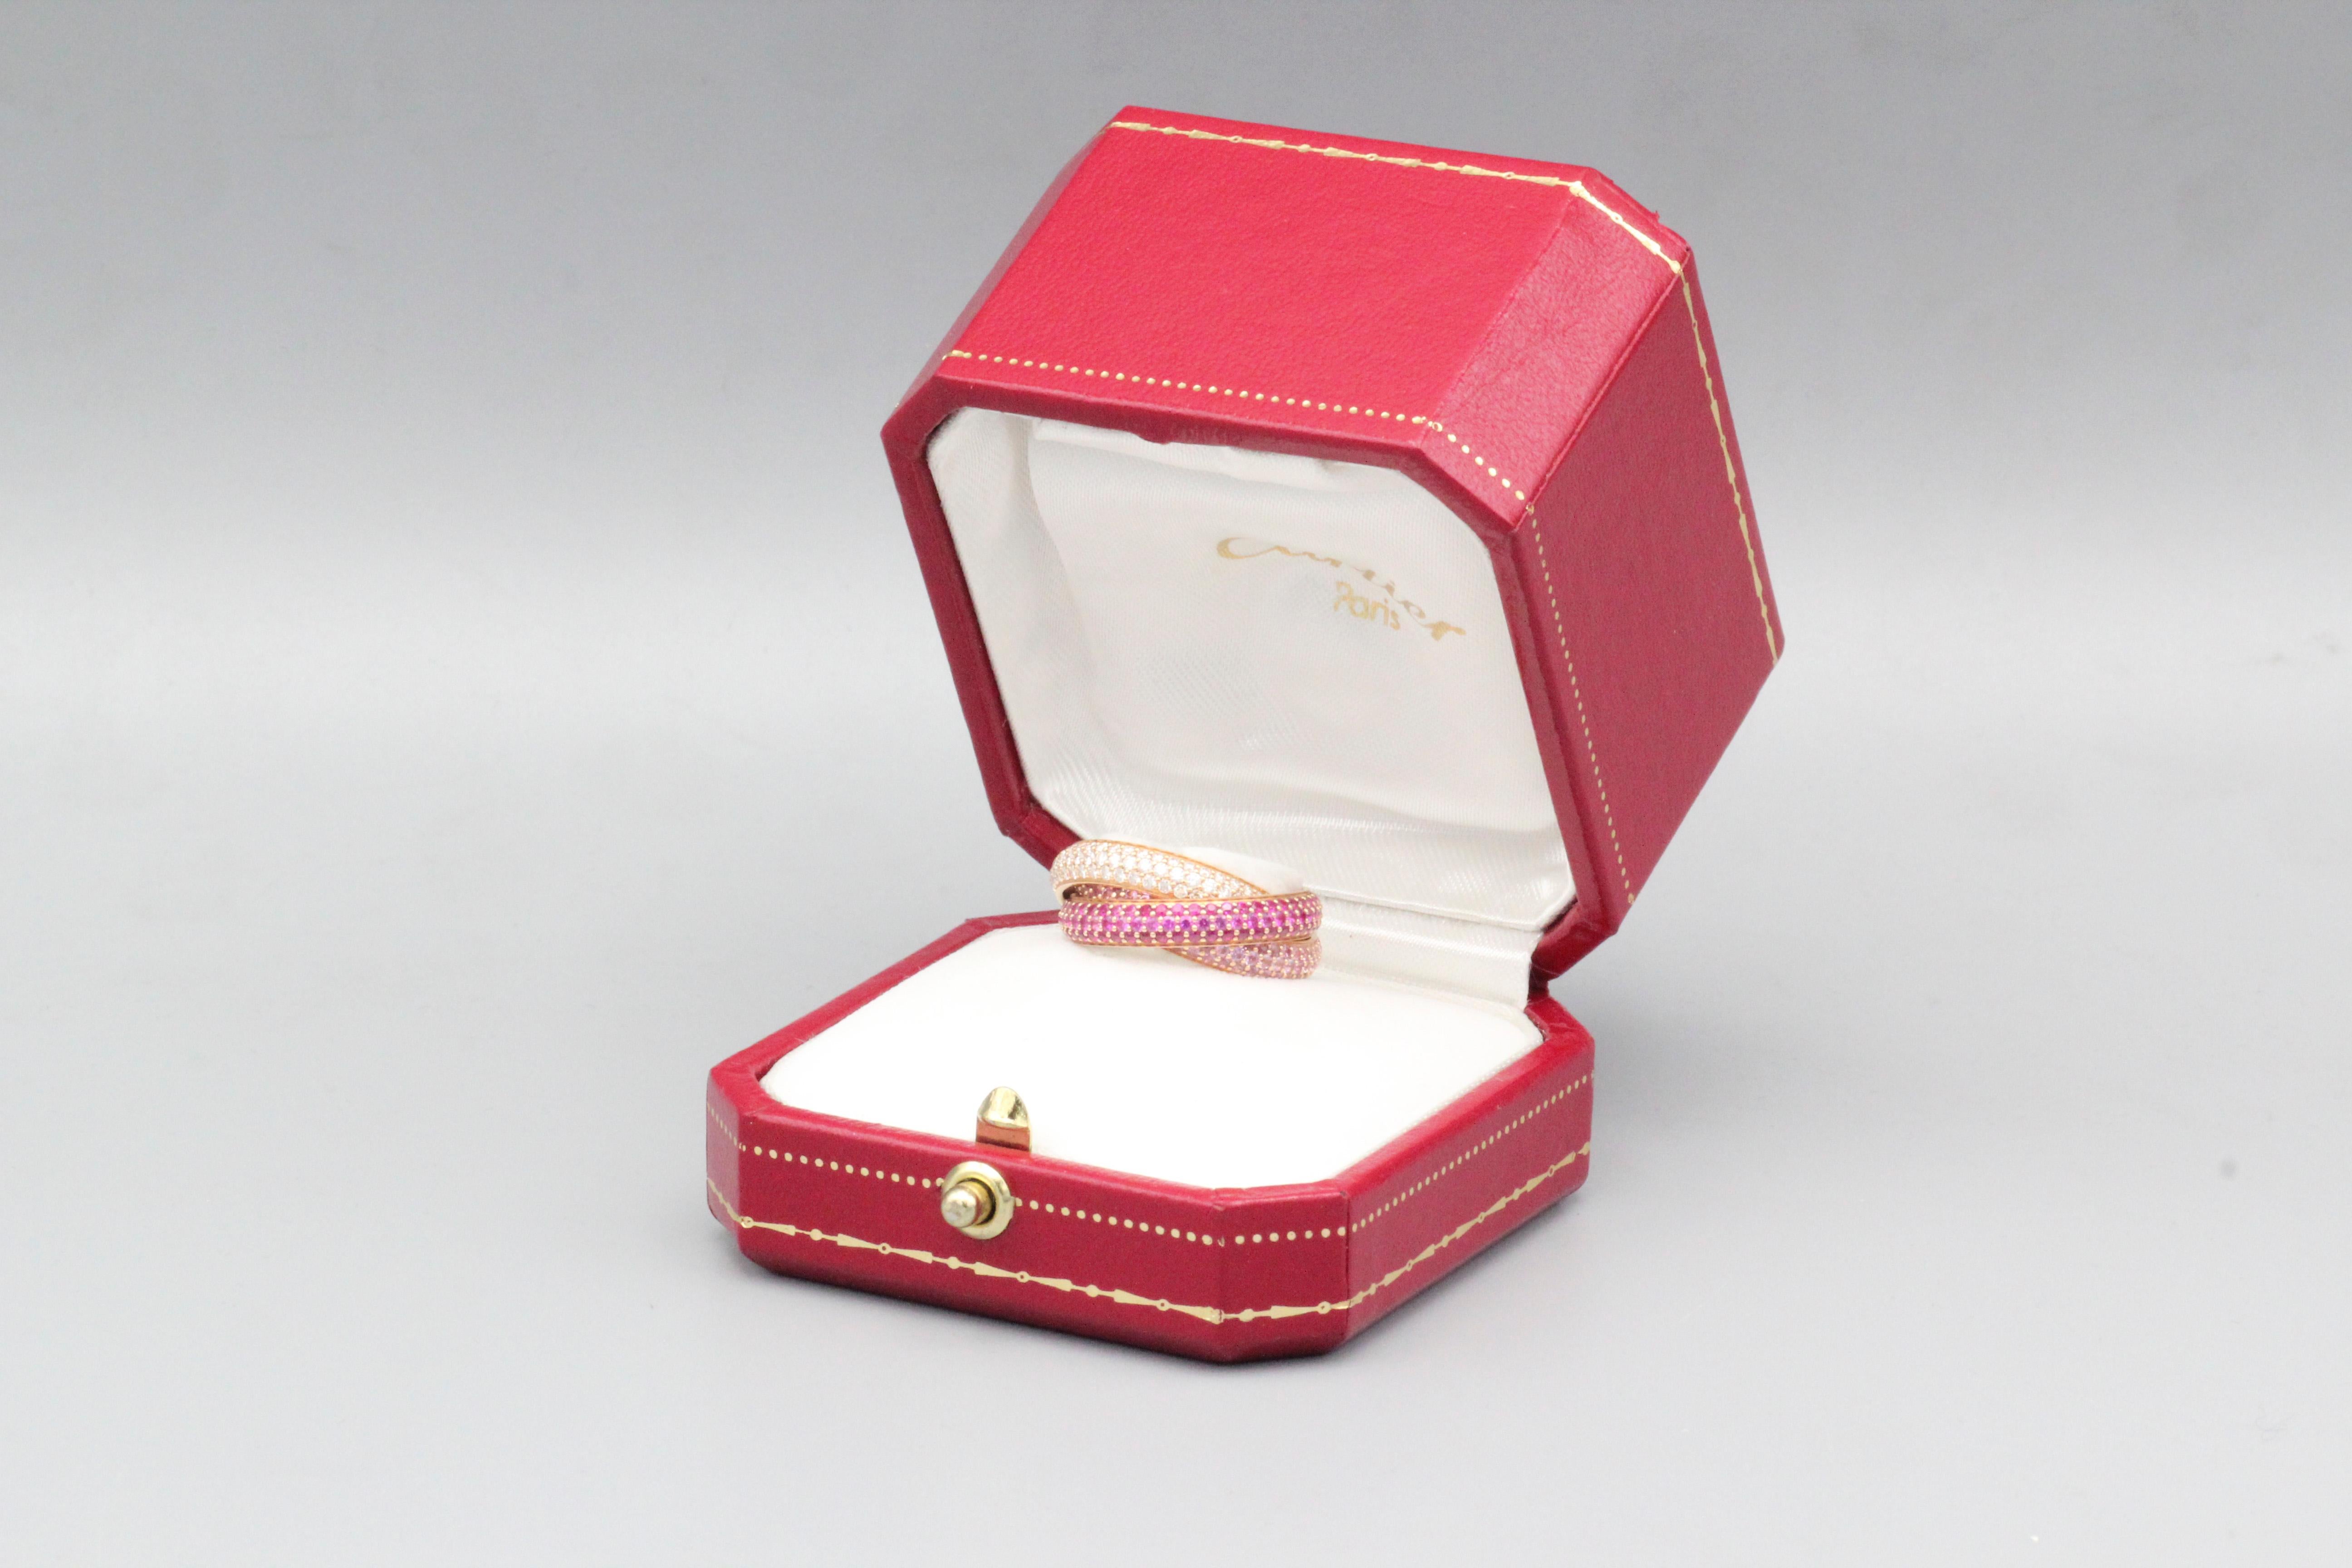 Plongez dans le monde du luxe avec le bracelet Cartier Trinity Ruby Pink Sapphire Diamond 18k Rose Gold - un témoignage de la collection emblématique Trinity de Cartier, qui associe pierres précieuses et savoir-faire artisanal exquis. Cette bague du